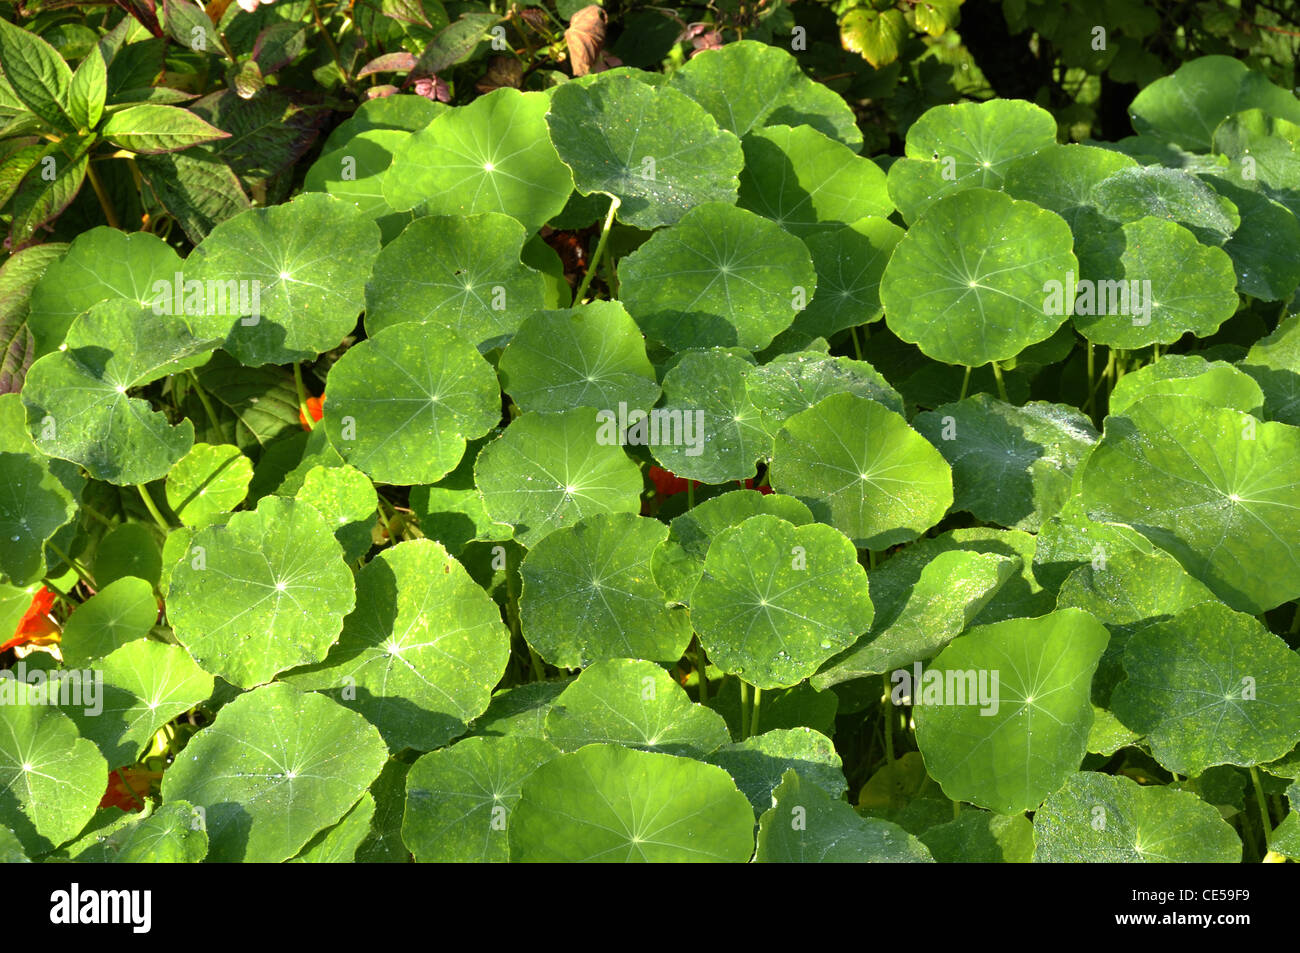 Nasturtium (Tropaeolum majus), annual plant Stock Photo